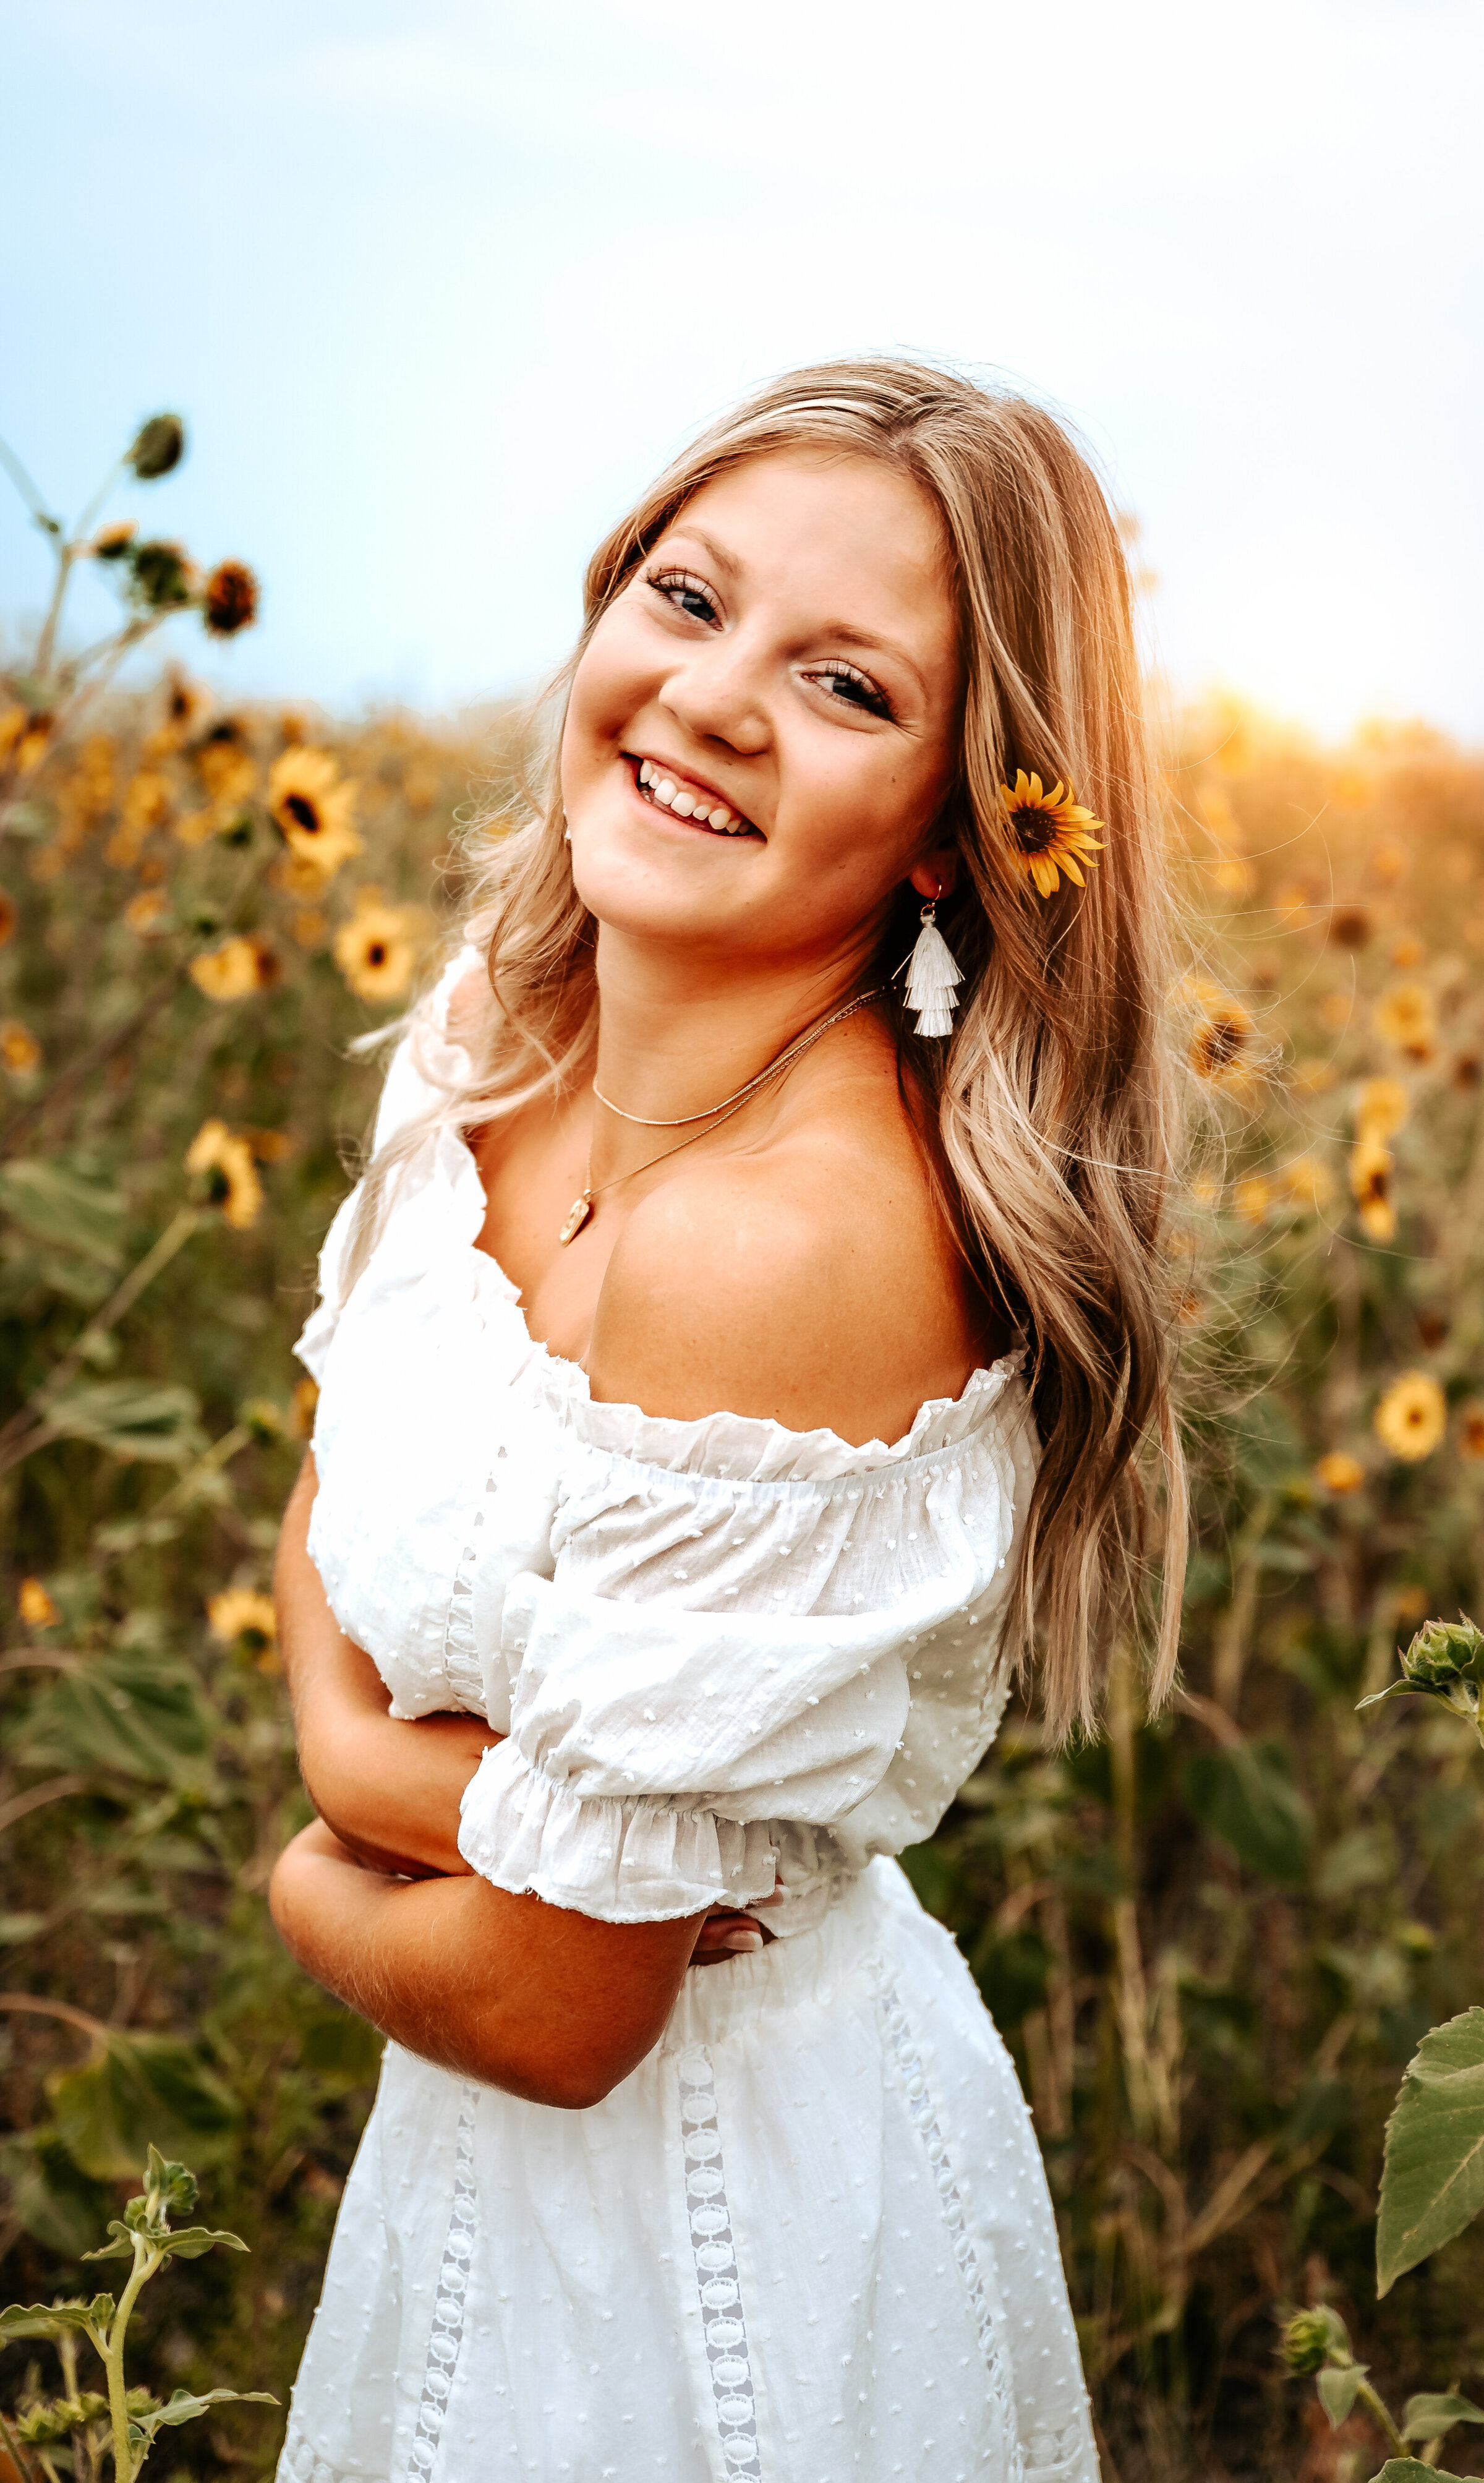 Senior girl wearing white dress has sunflower behind her ear